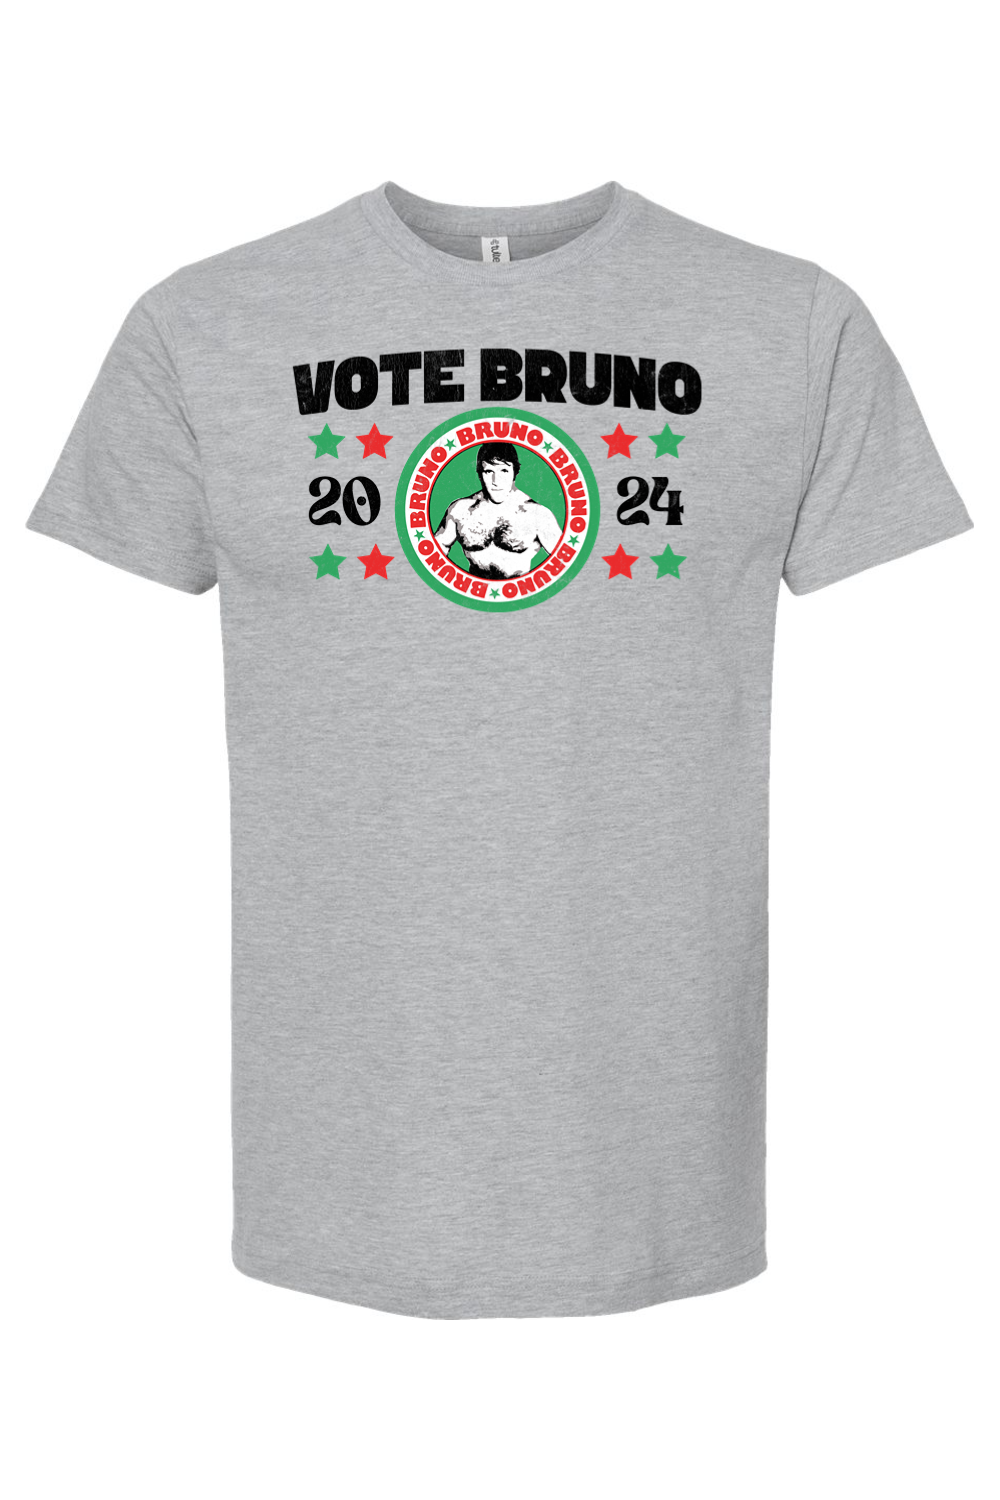 Vote Bruno - 2024